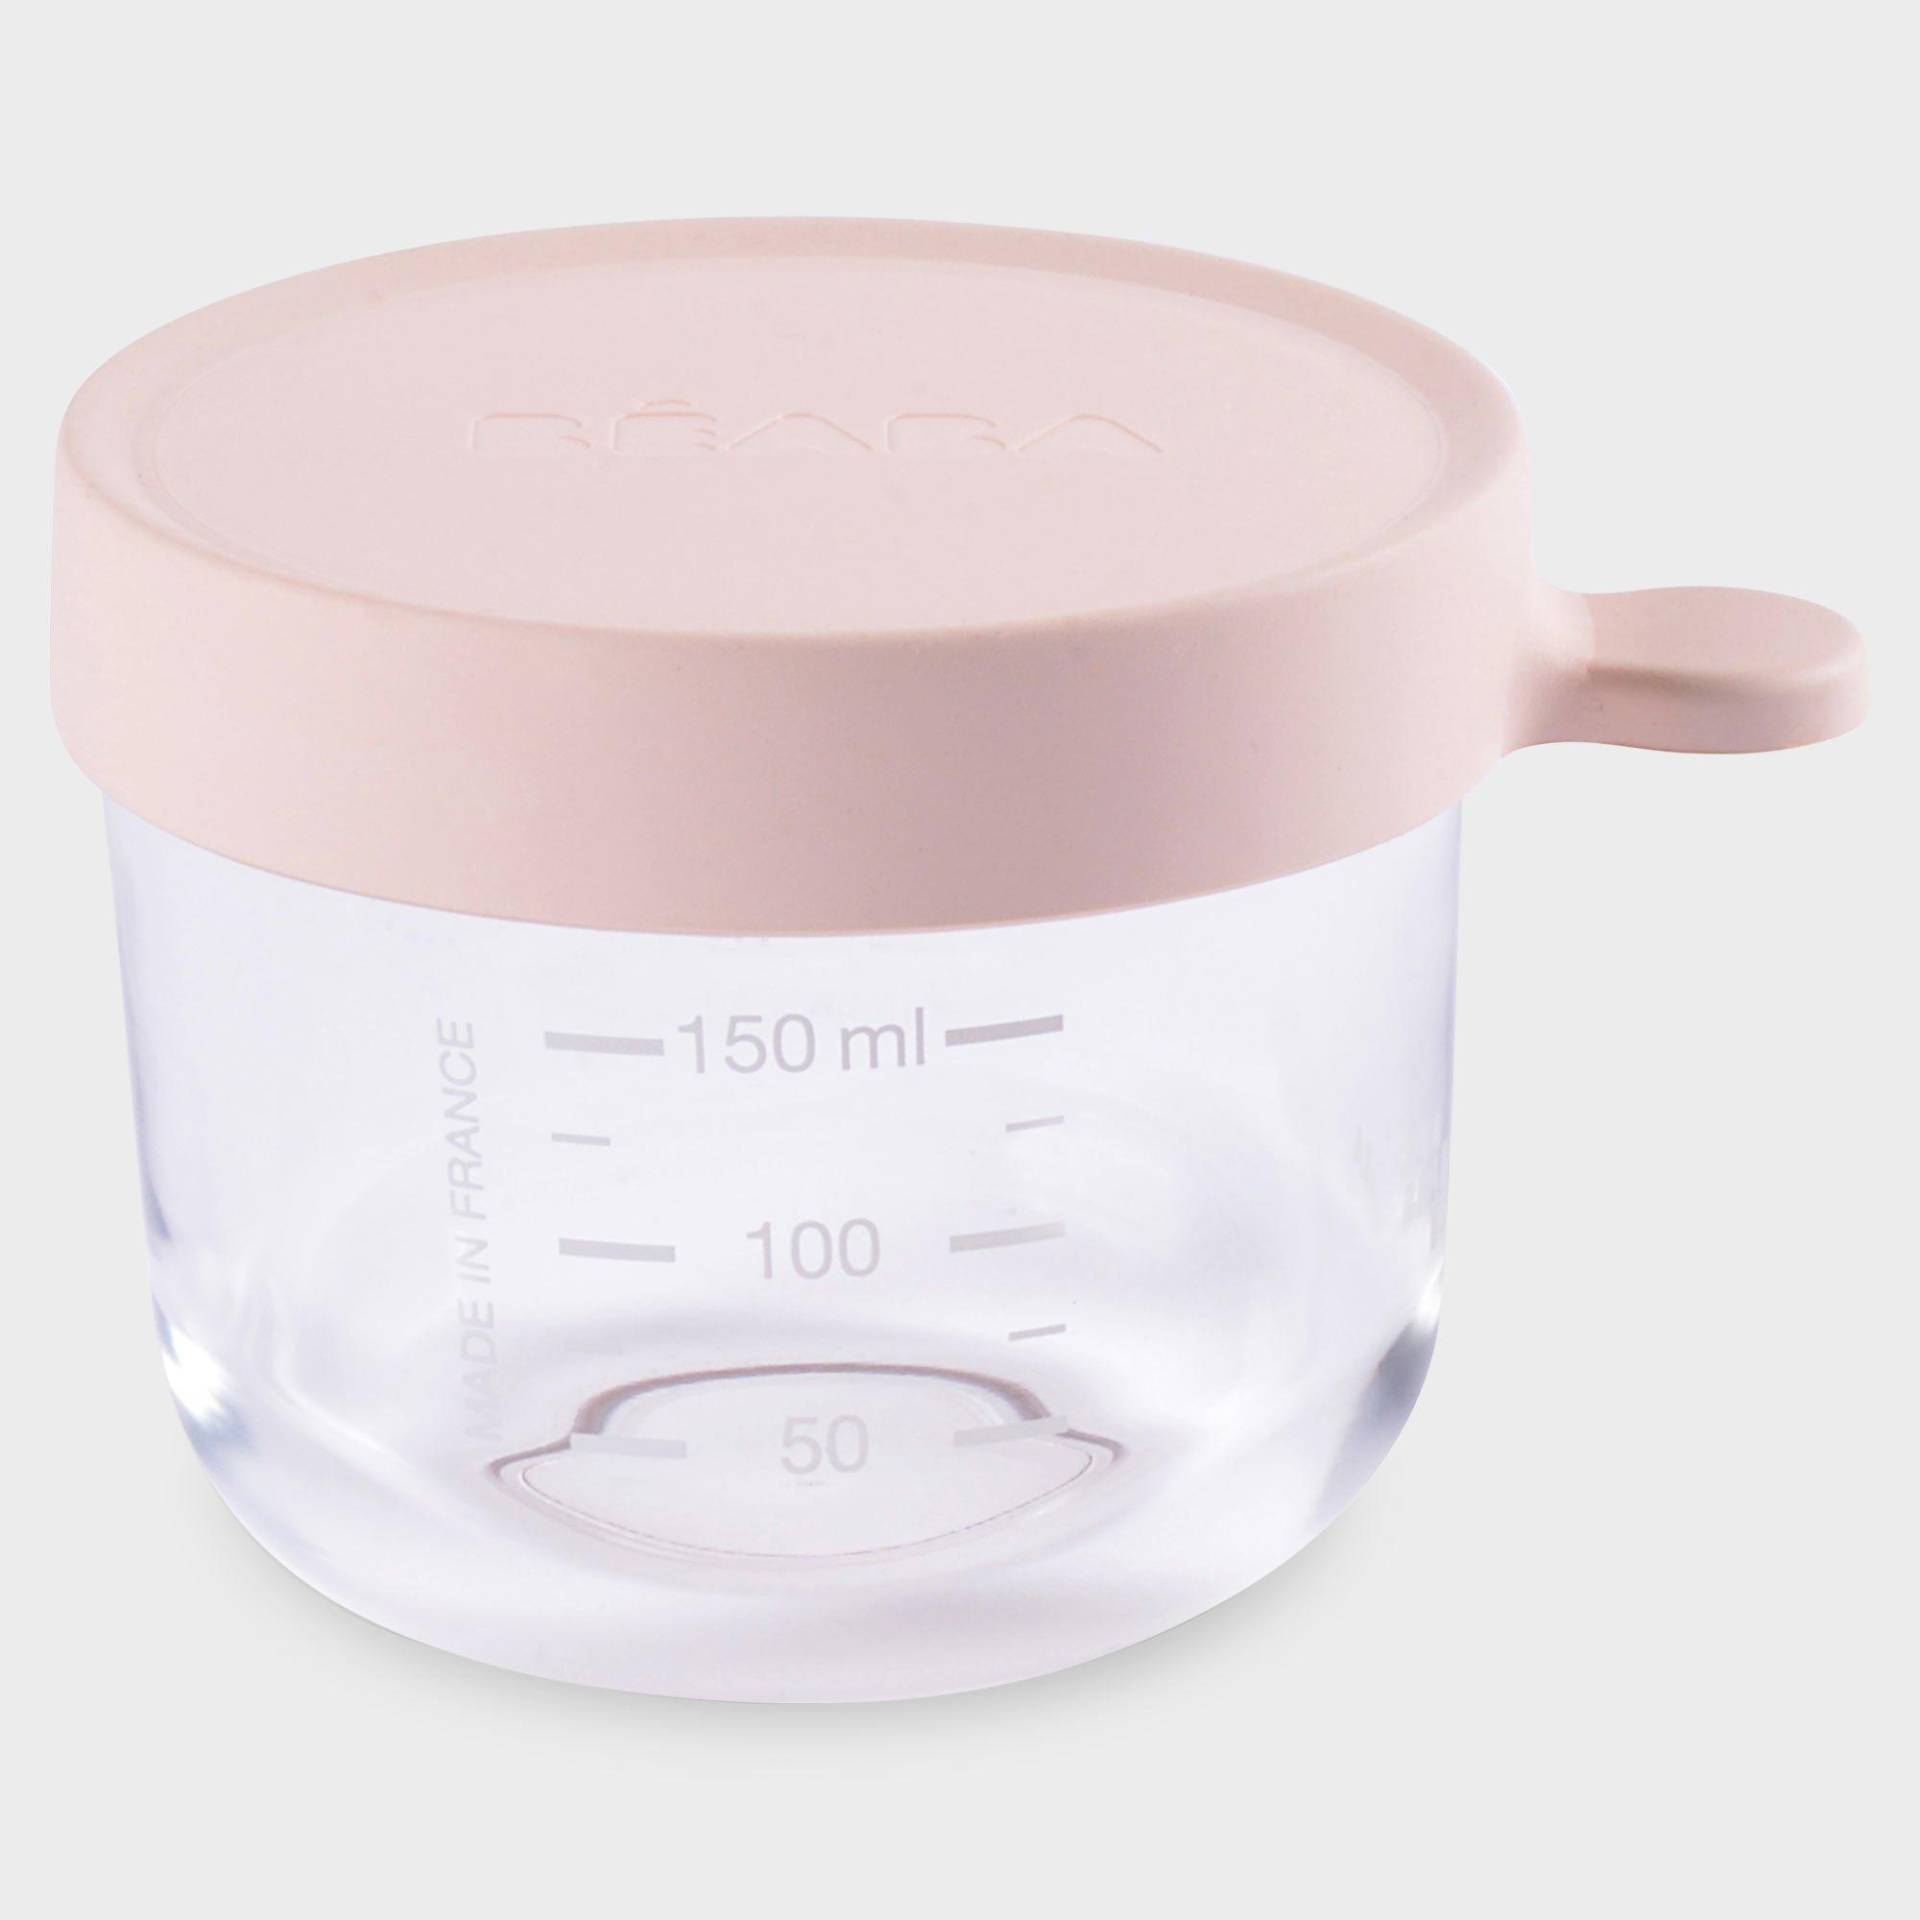 Babynahrungsbehälter Unisex Pink 150 ml von BEABA